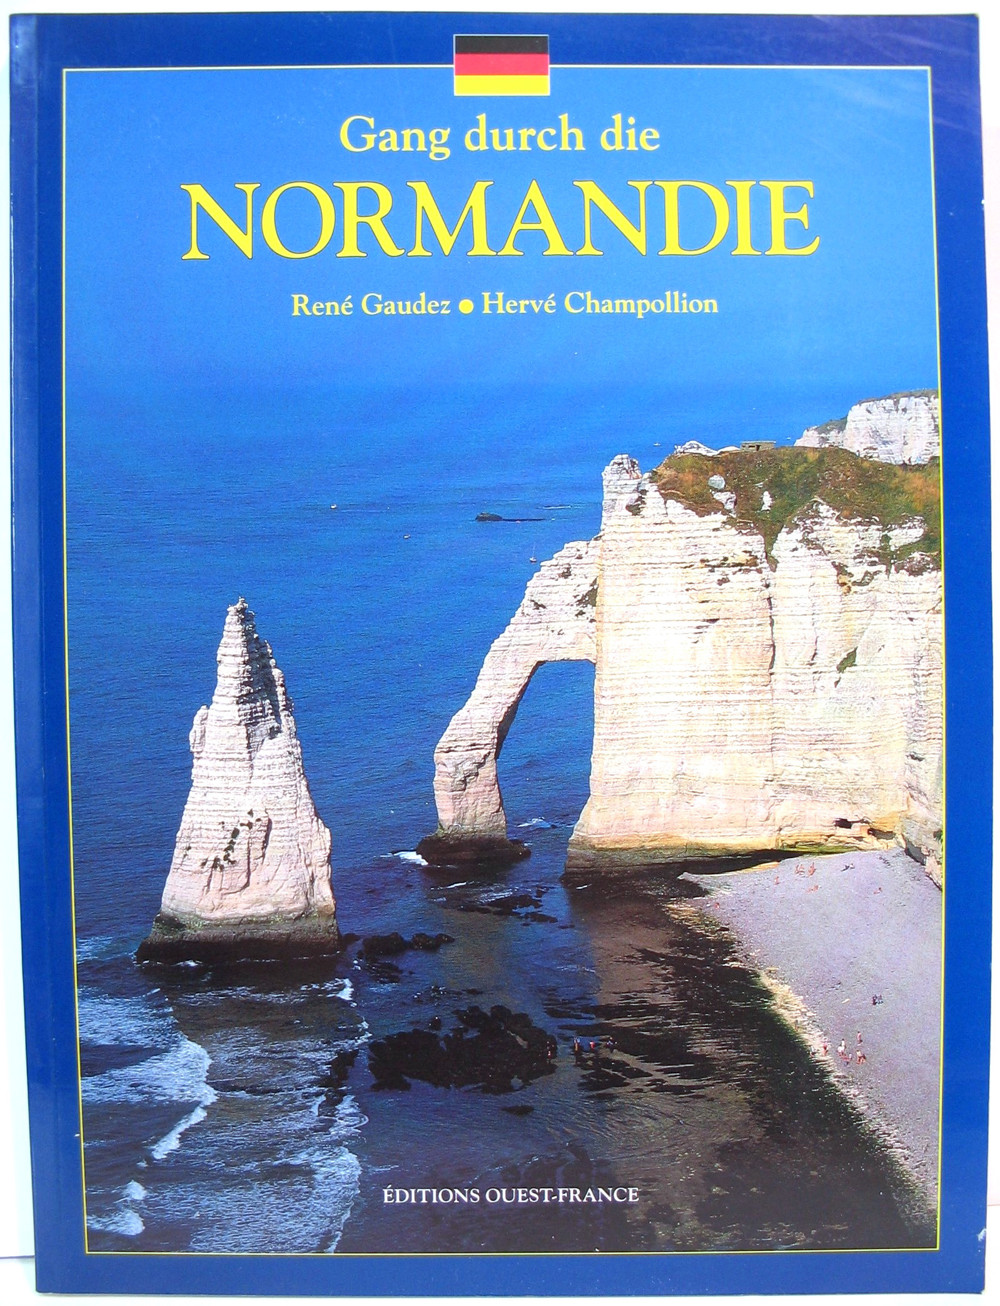 Buch - Gang durch die Normandie - 1996 - René Gaudez   Hervé Champollion